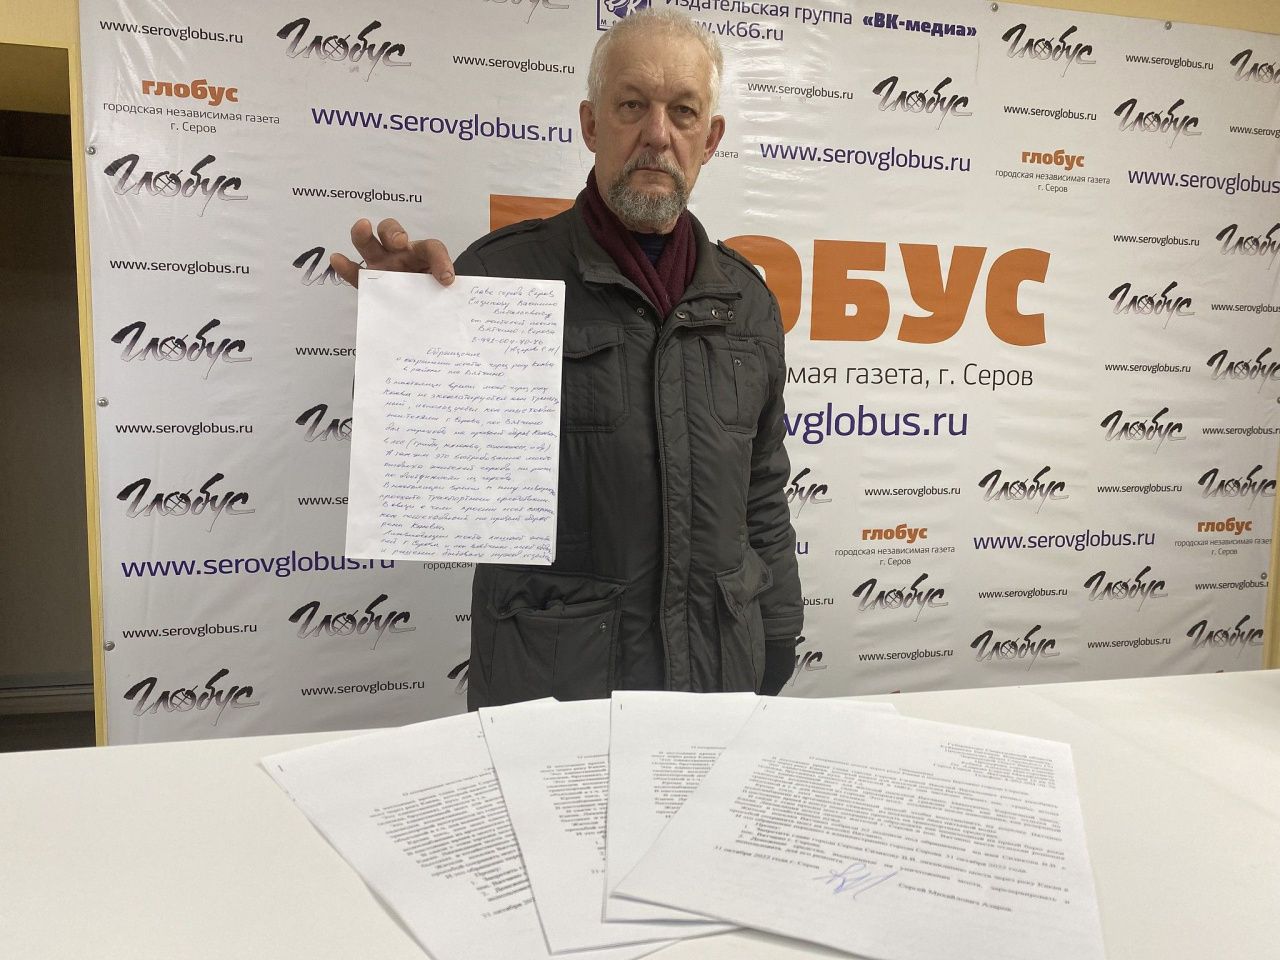 Серовчанин пожаловался замруководителя областного СКР на отсутствие в Вятчино качественной воды